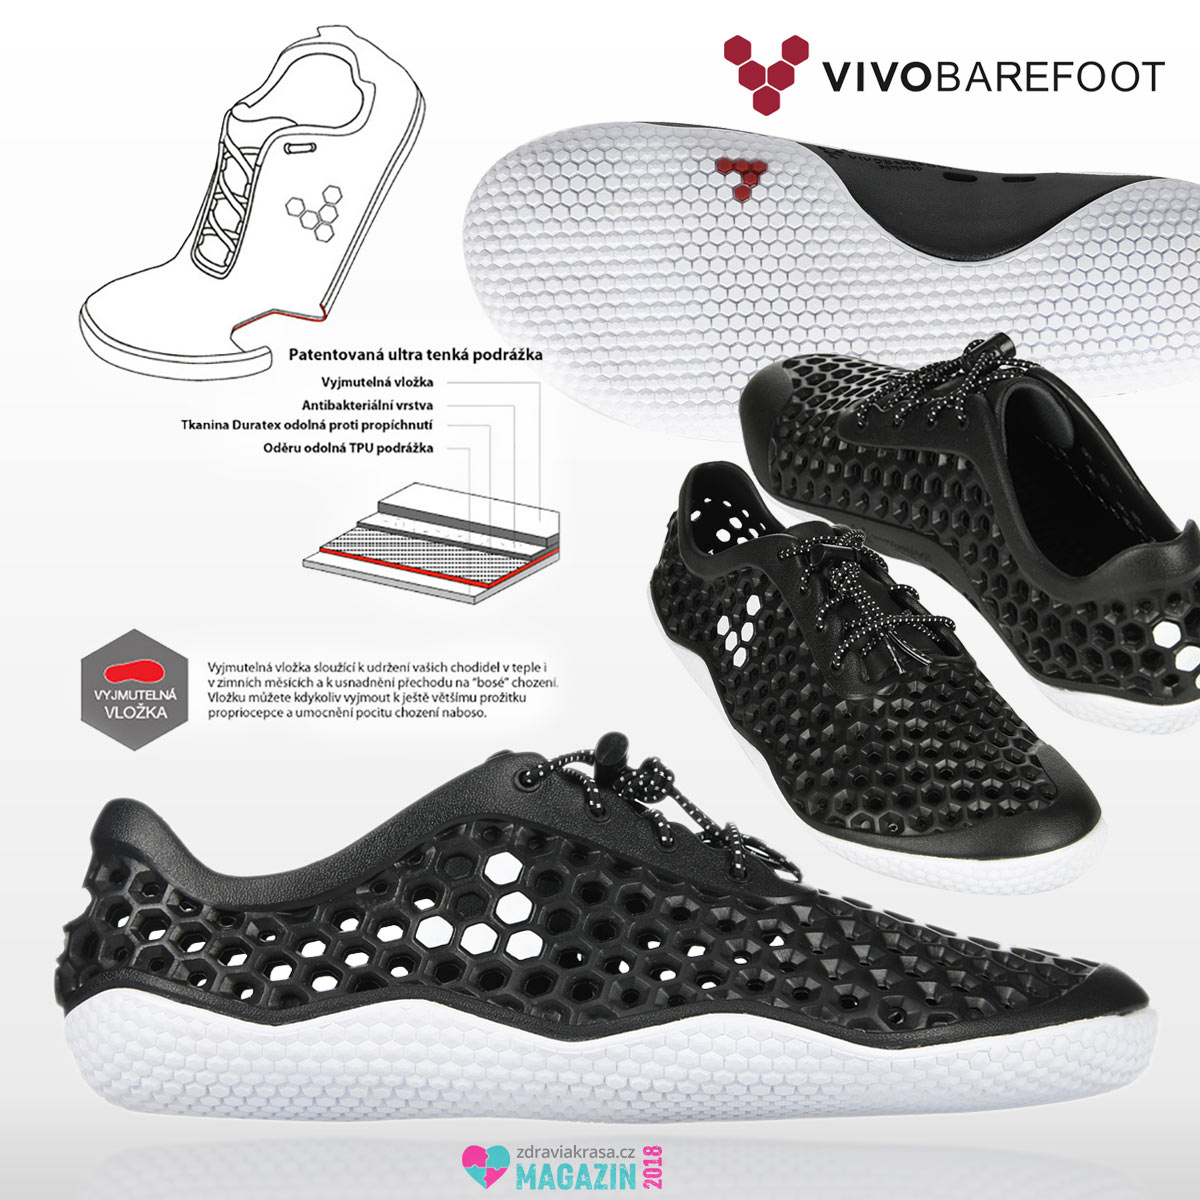 Filosofií barefoot bot VIVOBAREFOOT je nabízet zdravé boty nejen pro zdravá chodidla. 